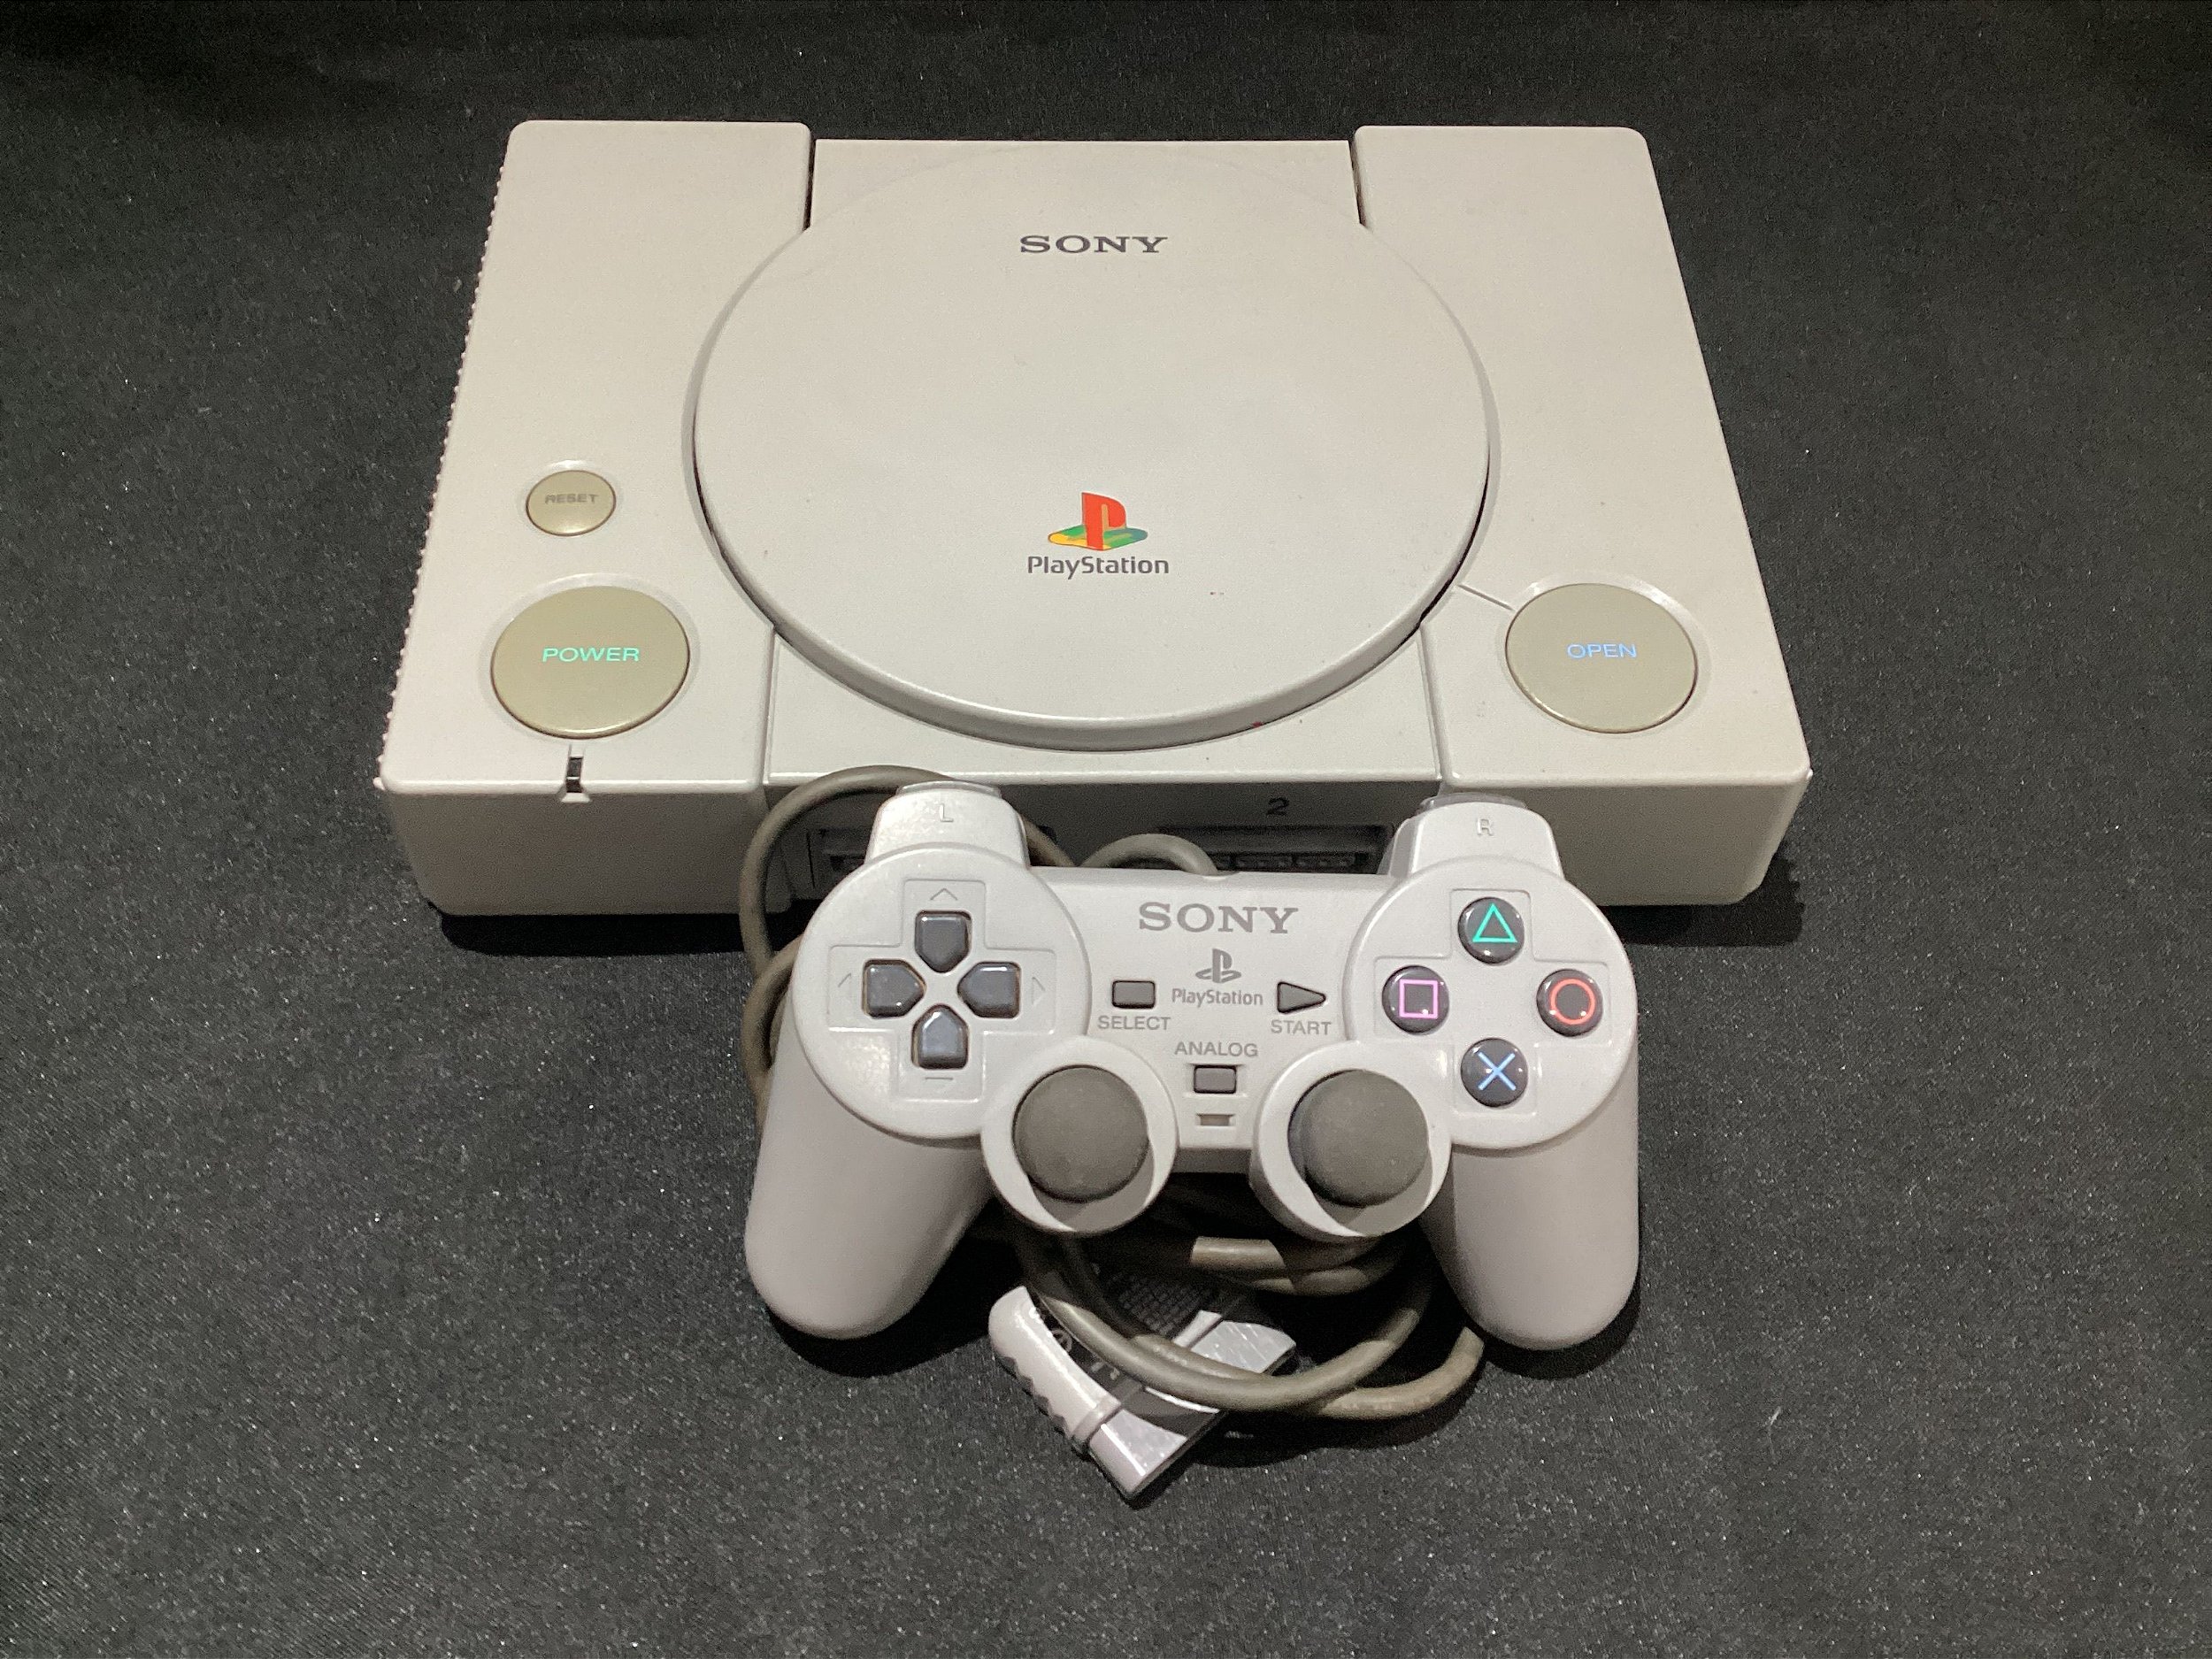 Console Playstation One - PS1 (1 controle original e 5 jogos